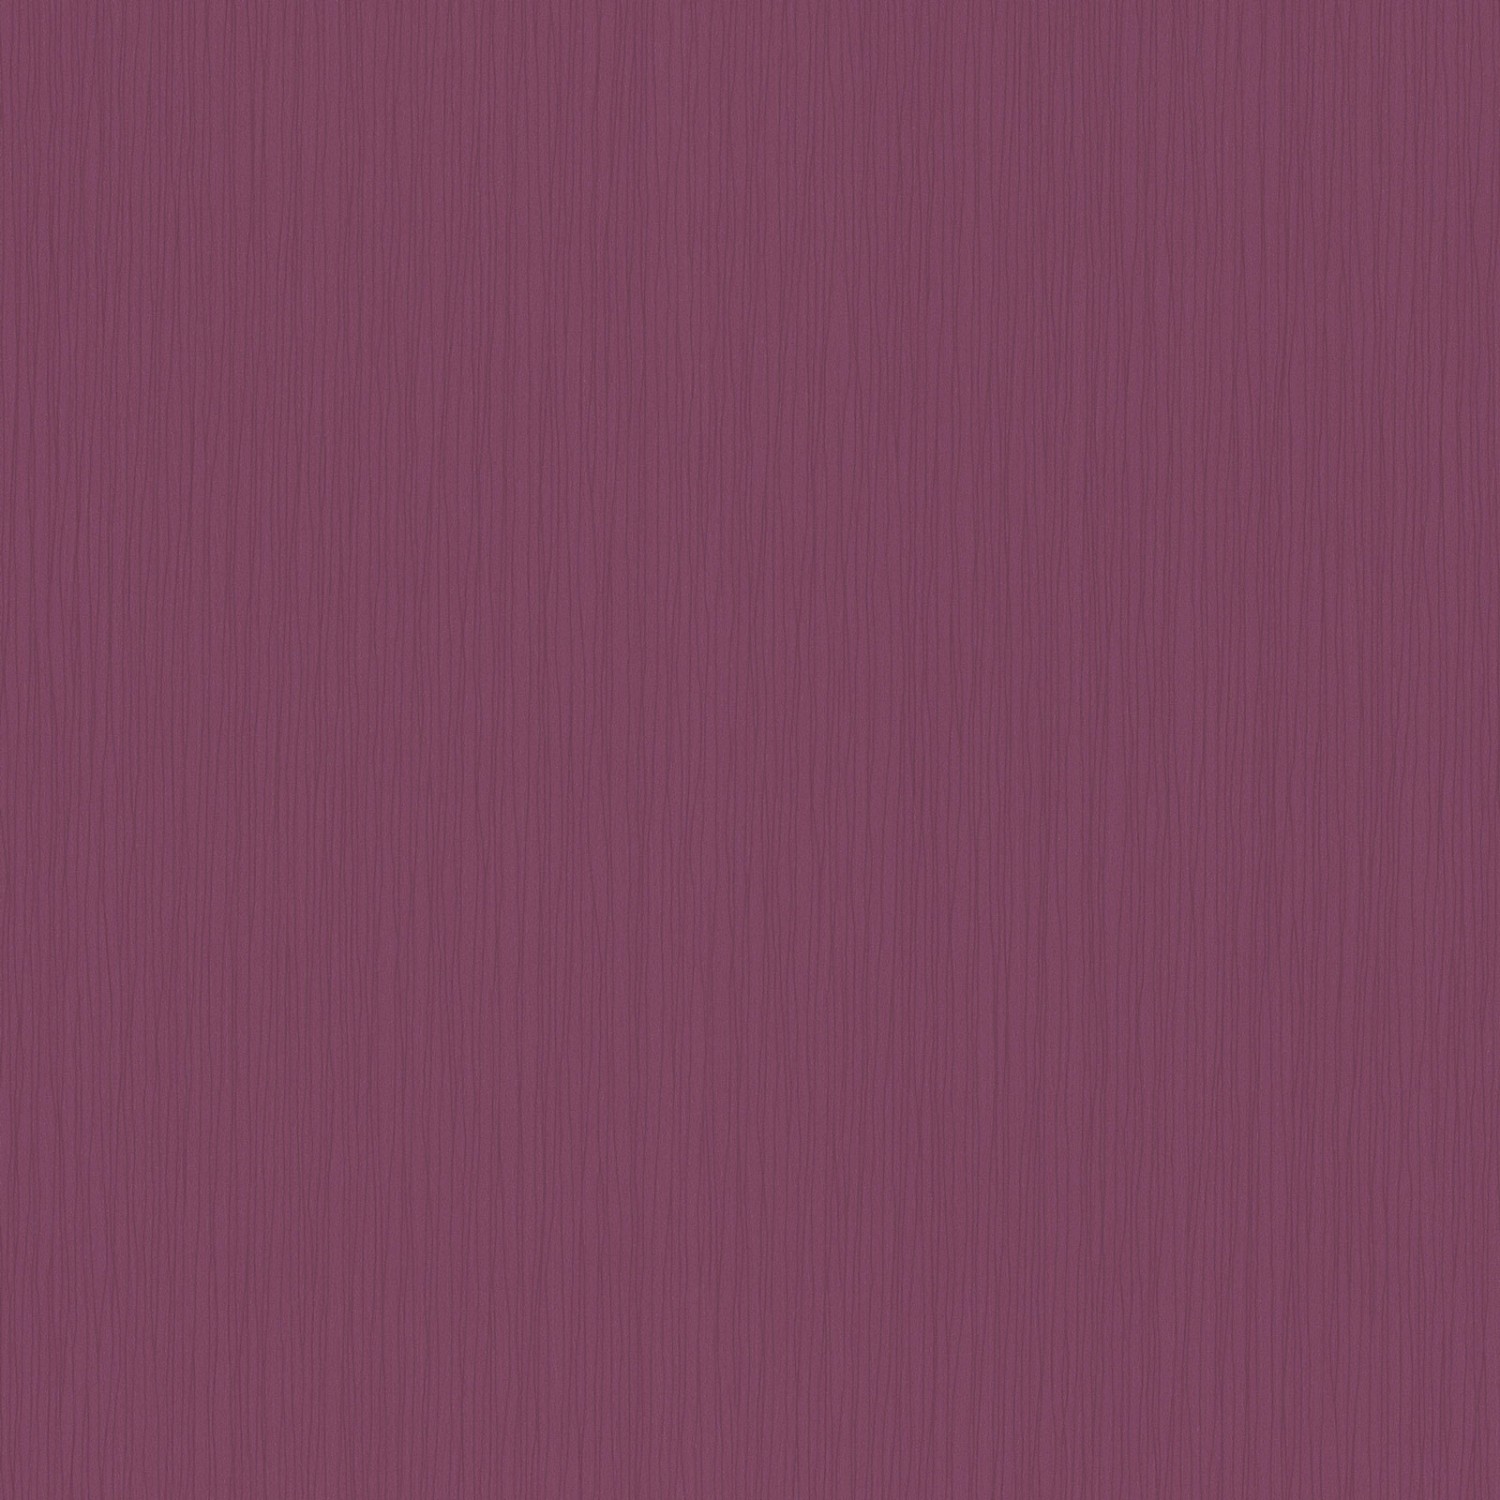 Bricoflor Uni Tapete in Brombeer Lila Papiertapete mit Linien Muster für Esszimmer und Küche Einfarbige Papier Wandtapete mit Vinyl in Beere Violett von Bricoflor